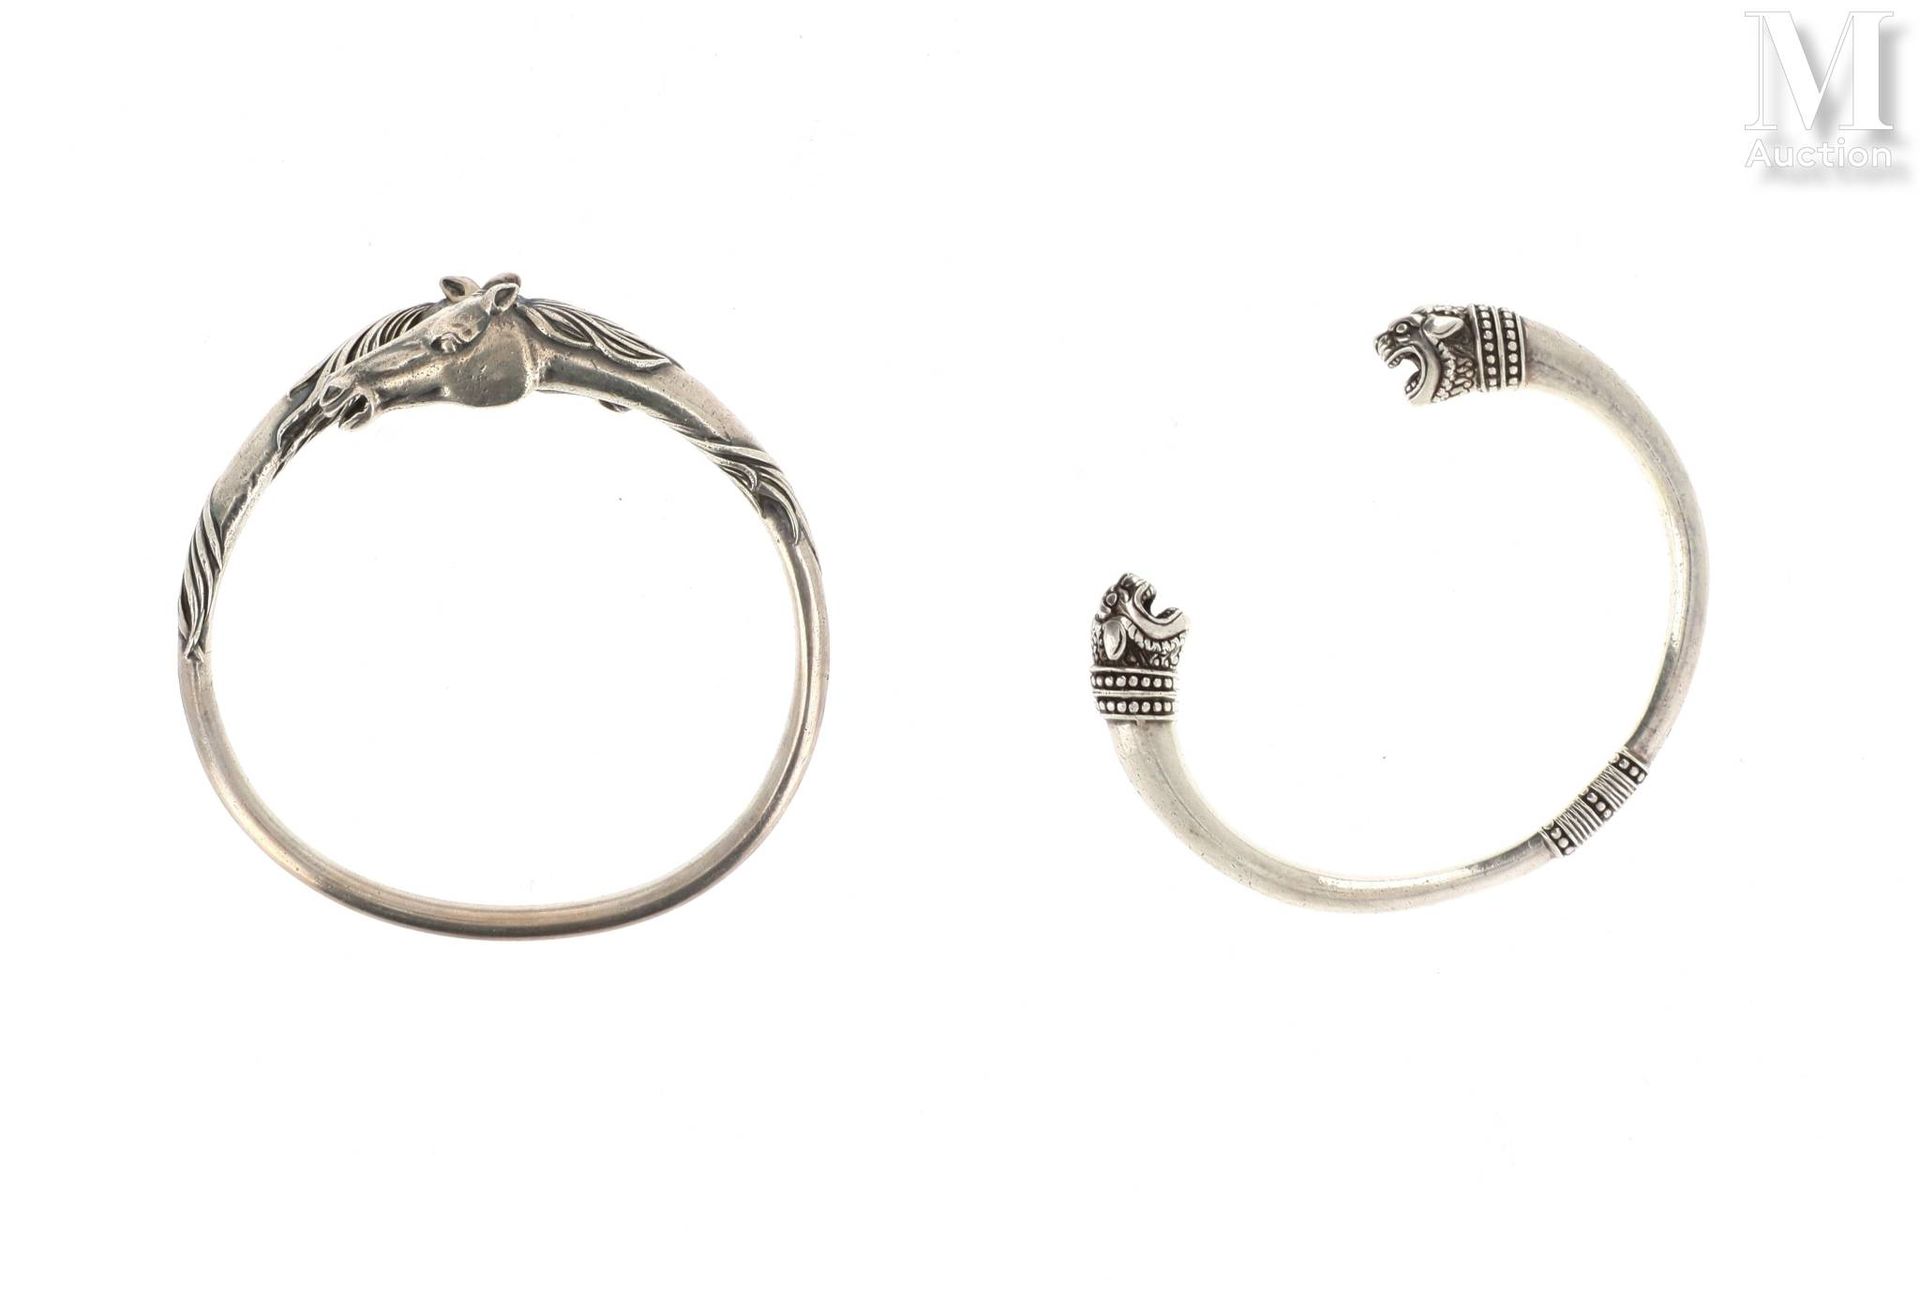 Deux bracelets ARTHUS-BERTRAND ARTHUS-BERTRAND
Lot of two open silver bracelets &hellip;